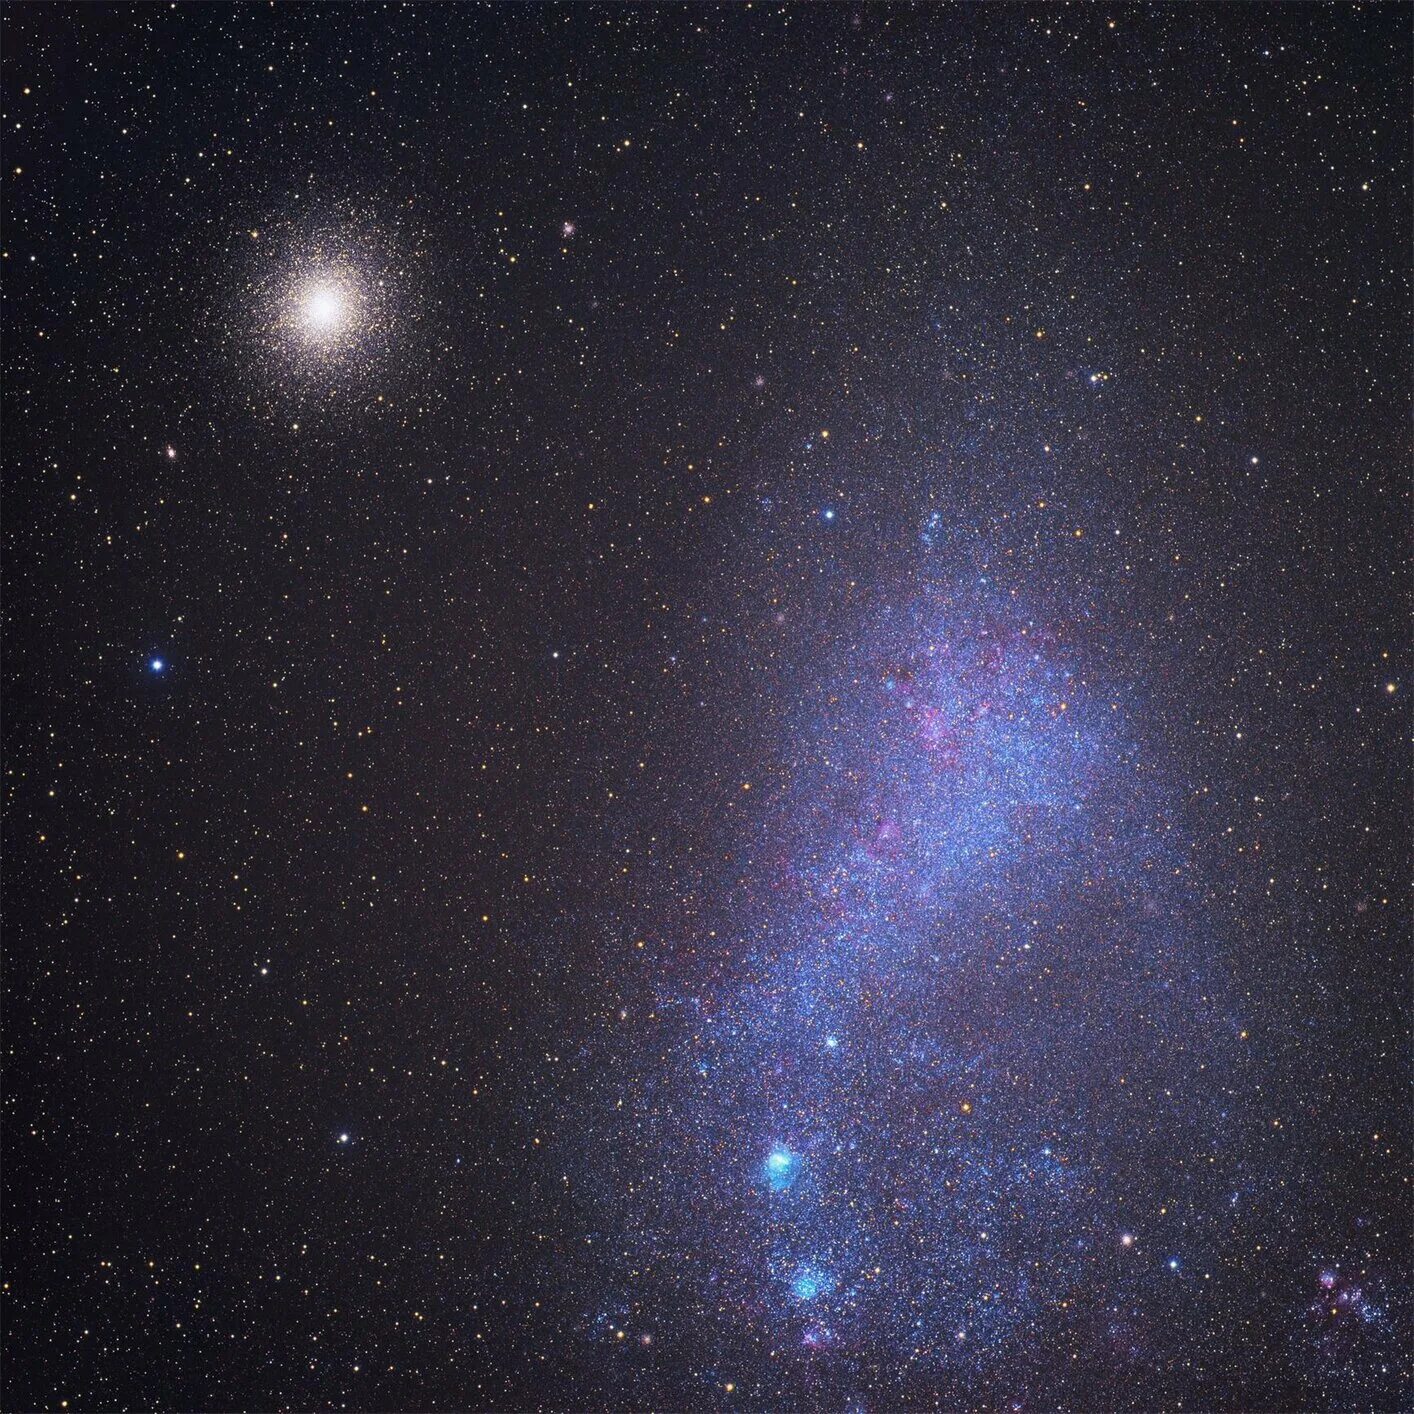 Магеллановы облака песни. Шаровое звездное скопление 47 тукана. Галактика Малое Магелланово. Галактика большое Магелланово облако. Малое Магелланово облако Галактика Млечный путь.